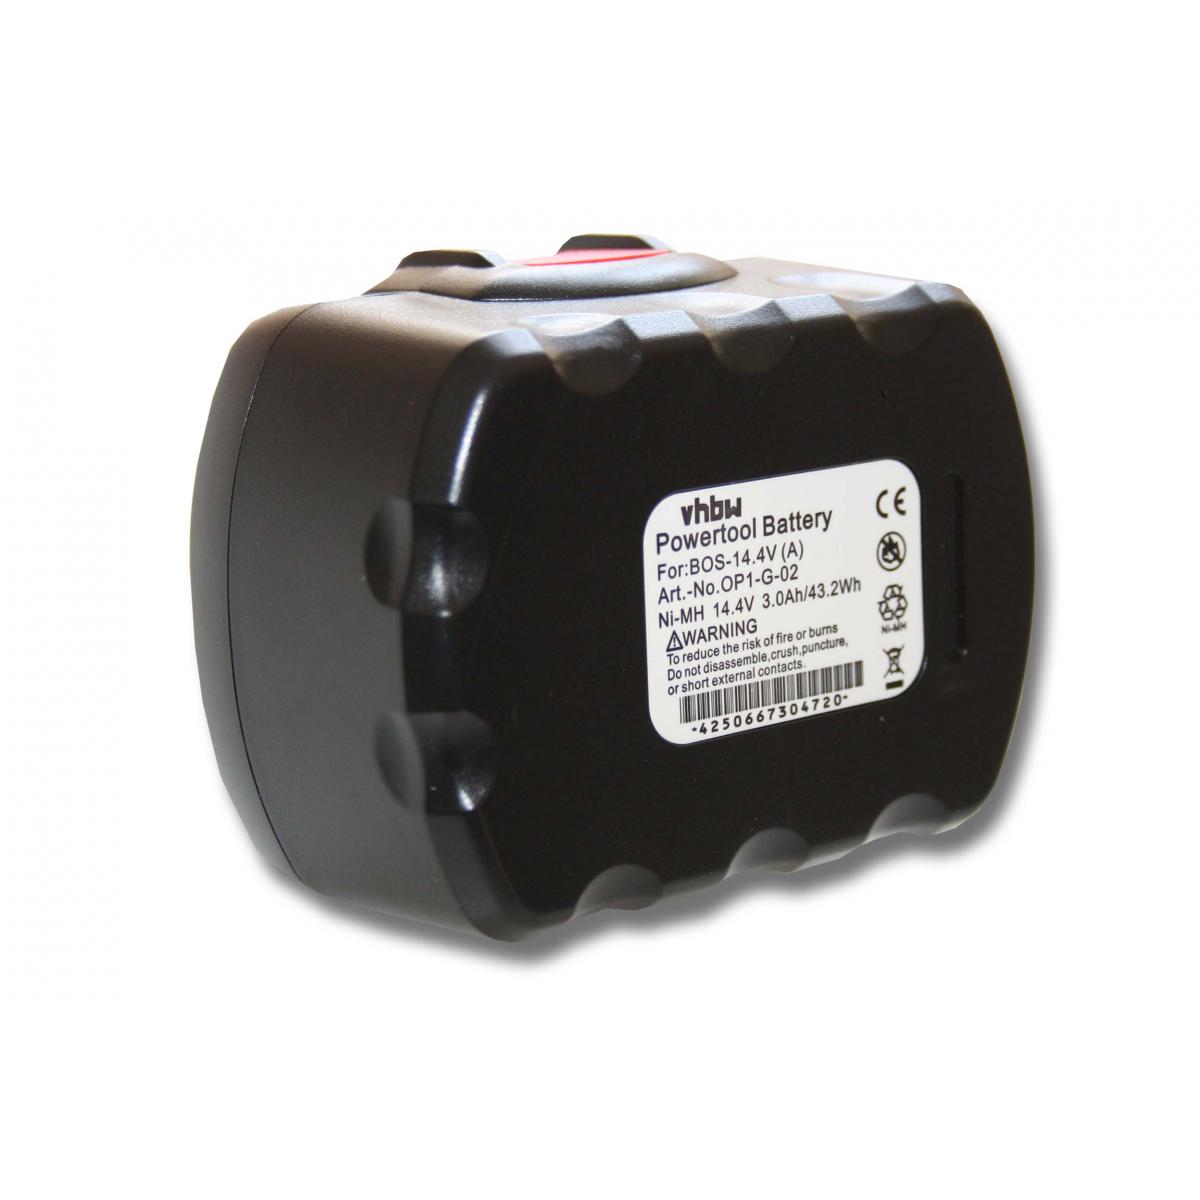 Vhbw - vhbw Batterie compatible avec Bosch PSB 14,4 V-i, PSR 140, 3670 outil électrique (3000mAh NiMH 14,4V) - Clouterie